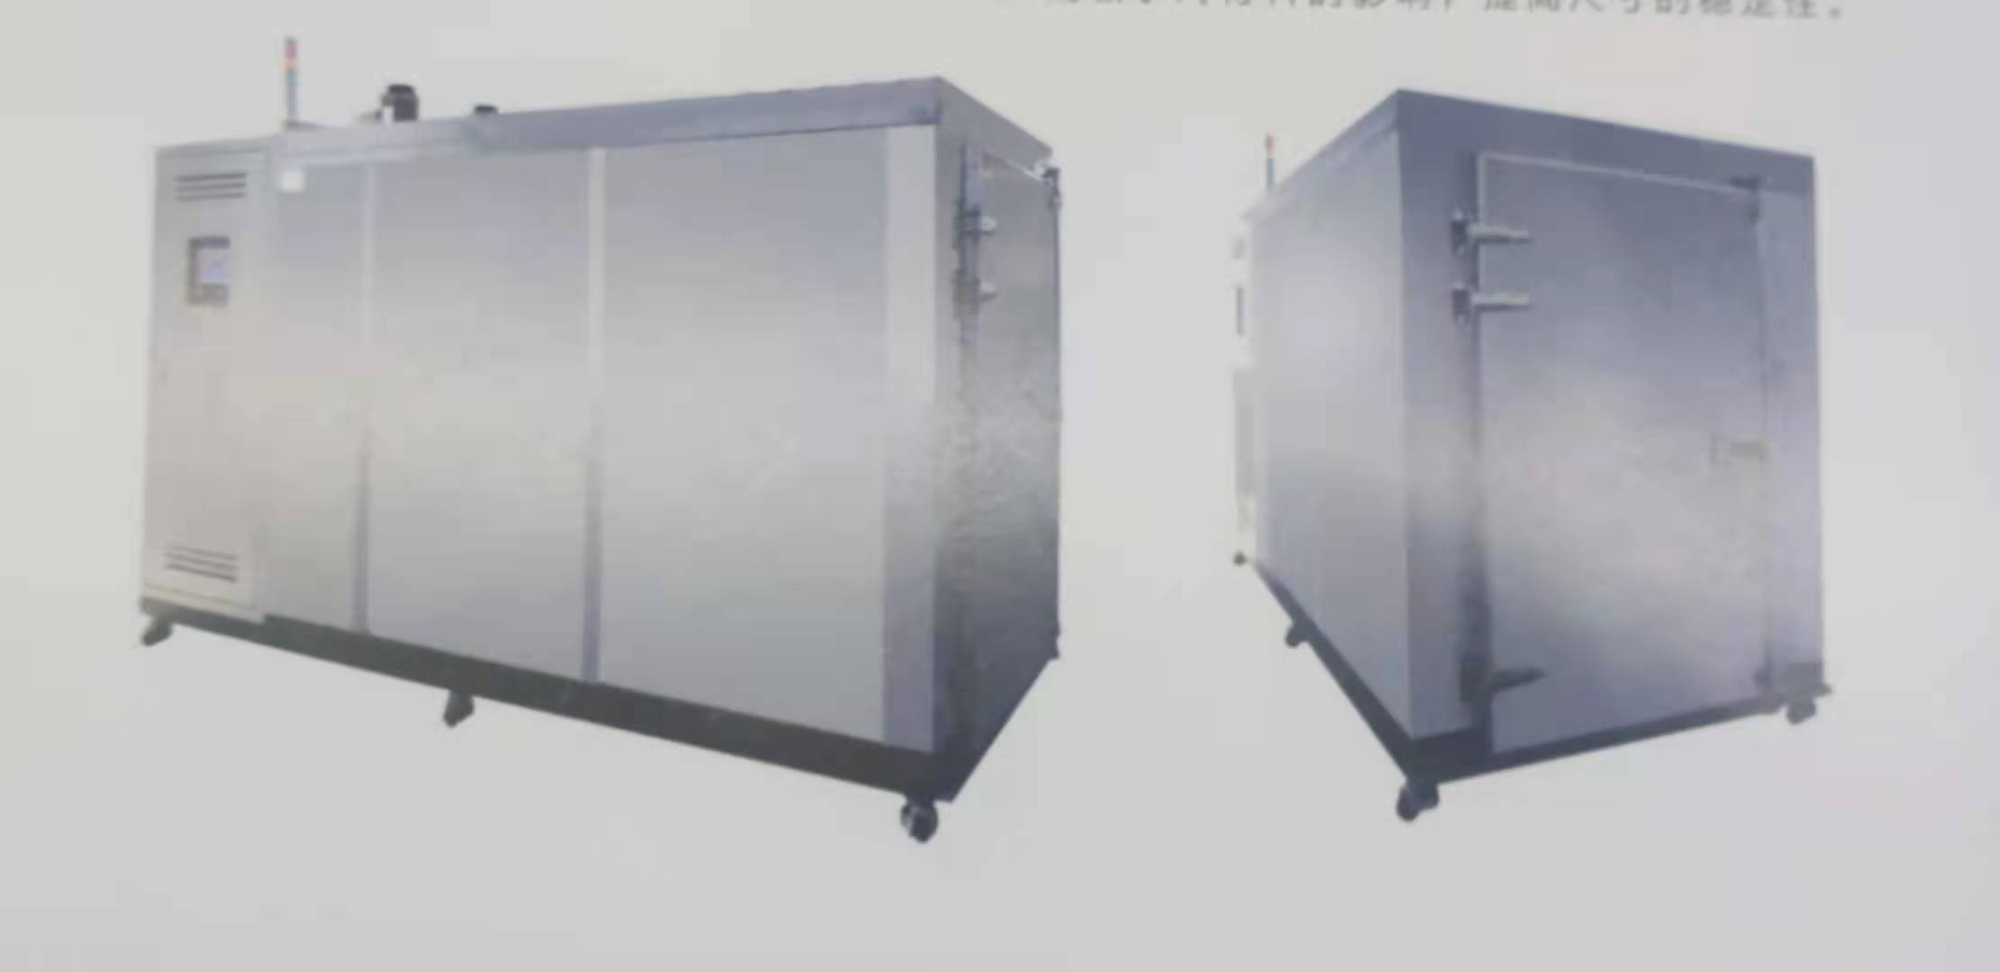 尼龙湿热房水处理设备厂 无锡盛普实验装备供应